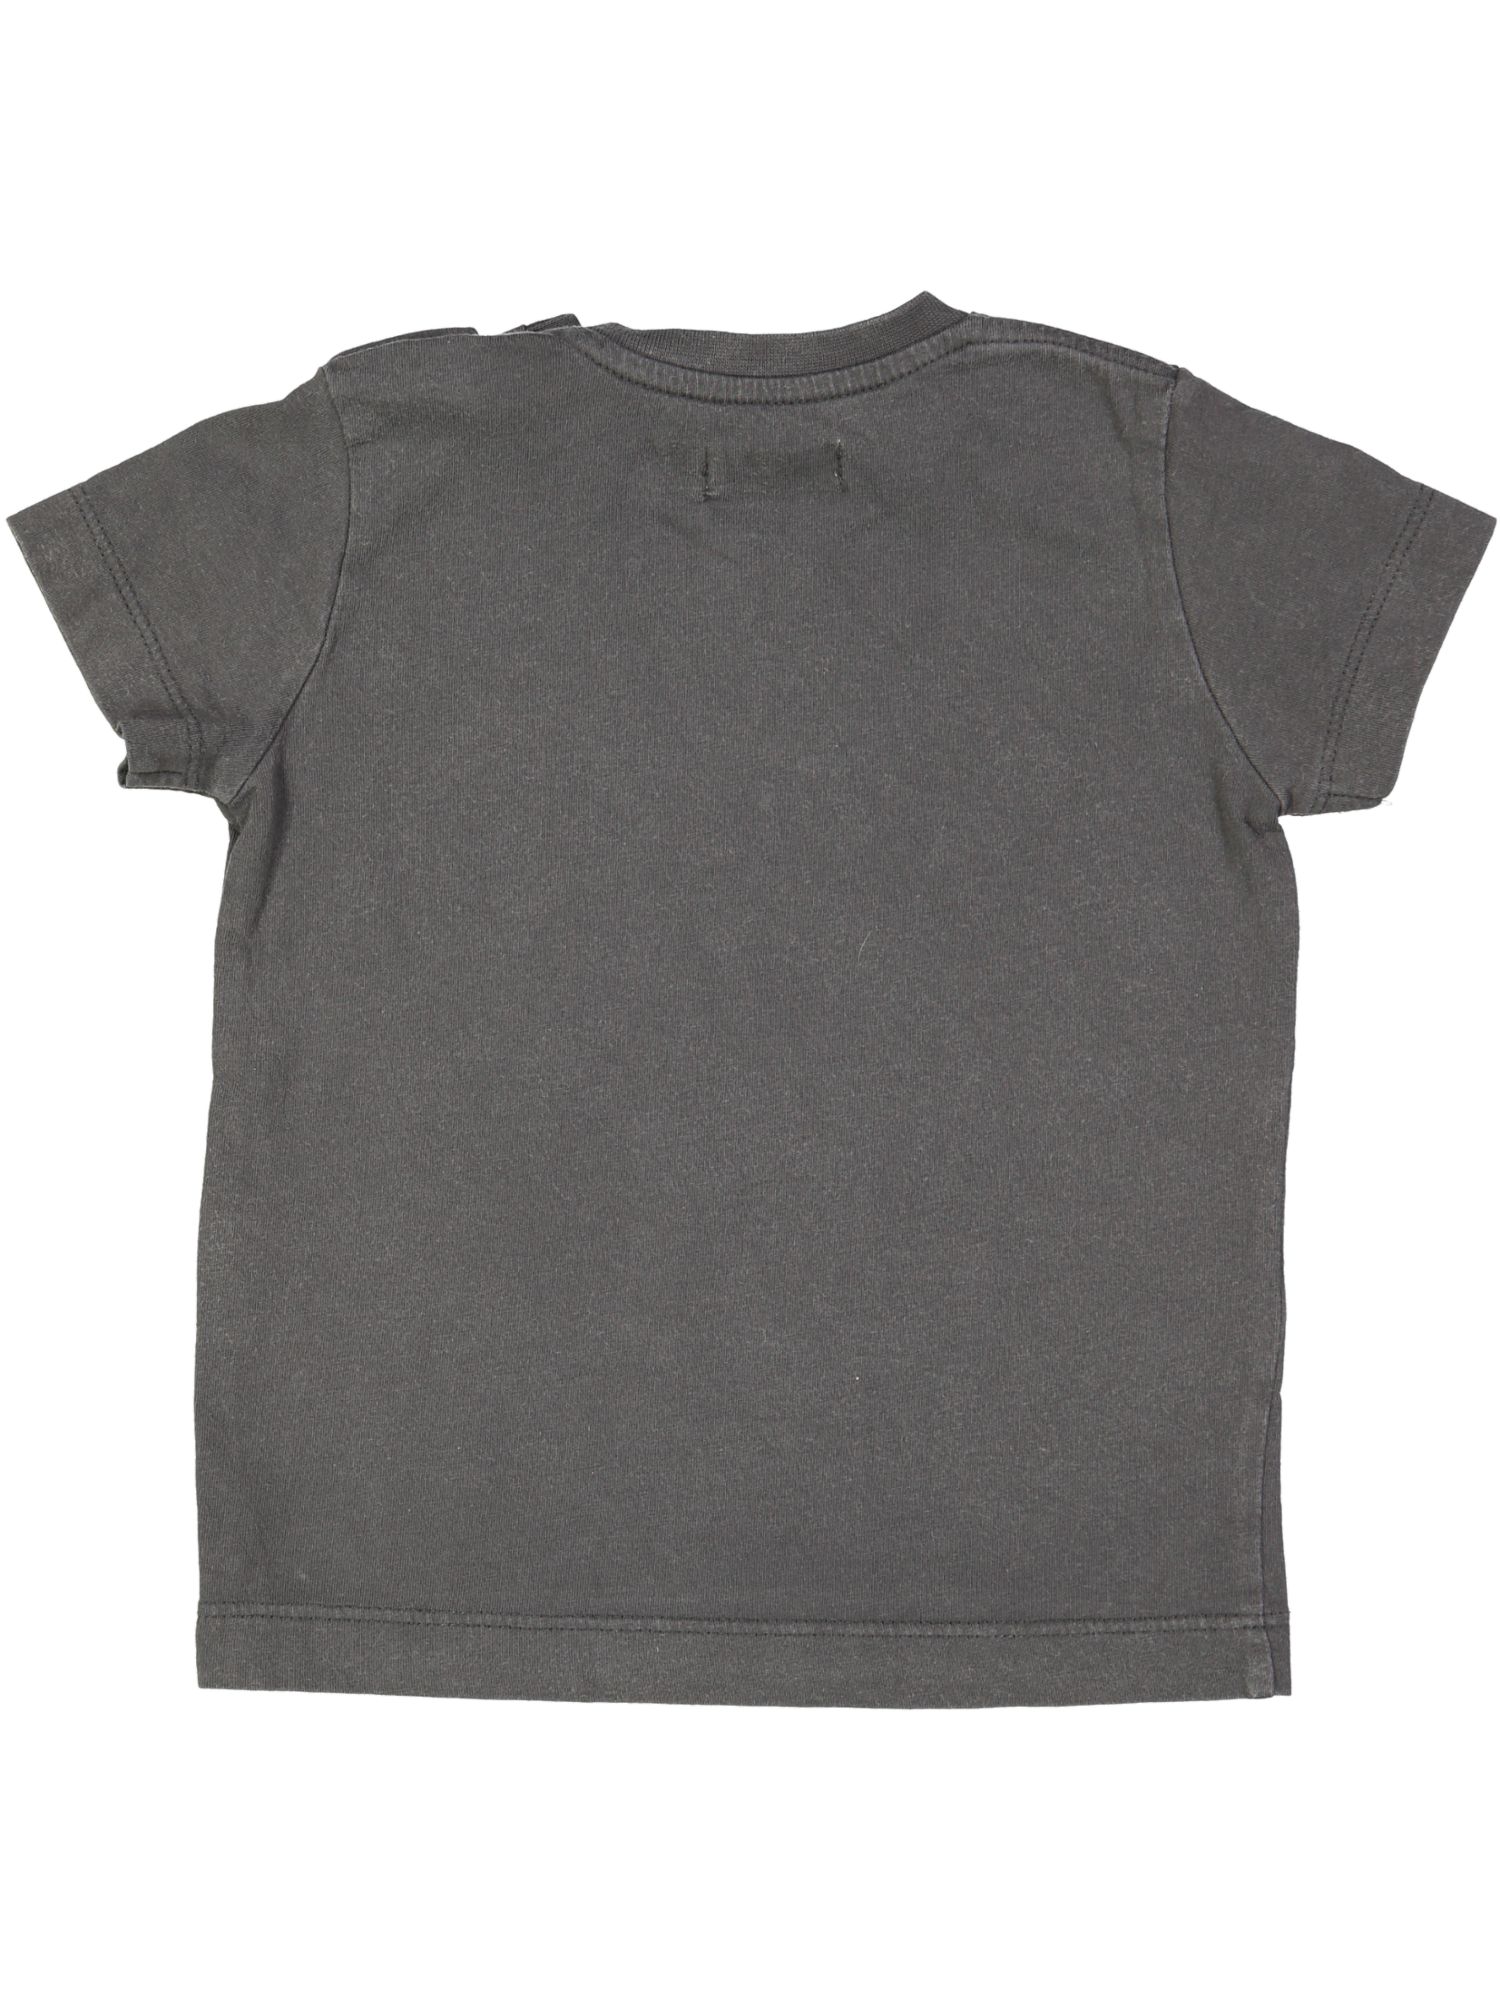 t-shirt grijs boy 12m .